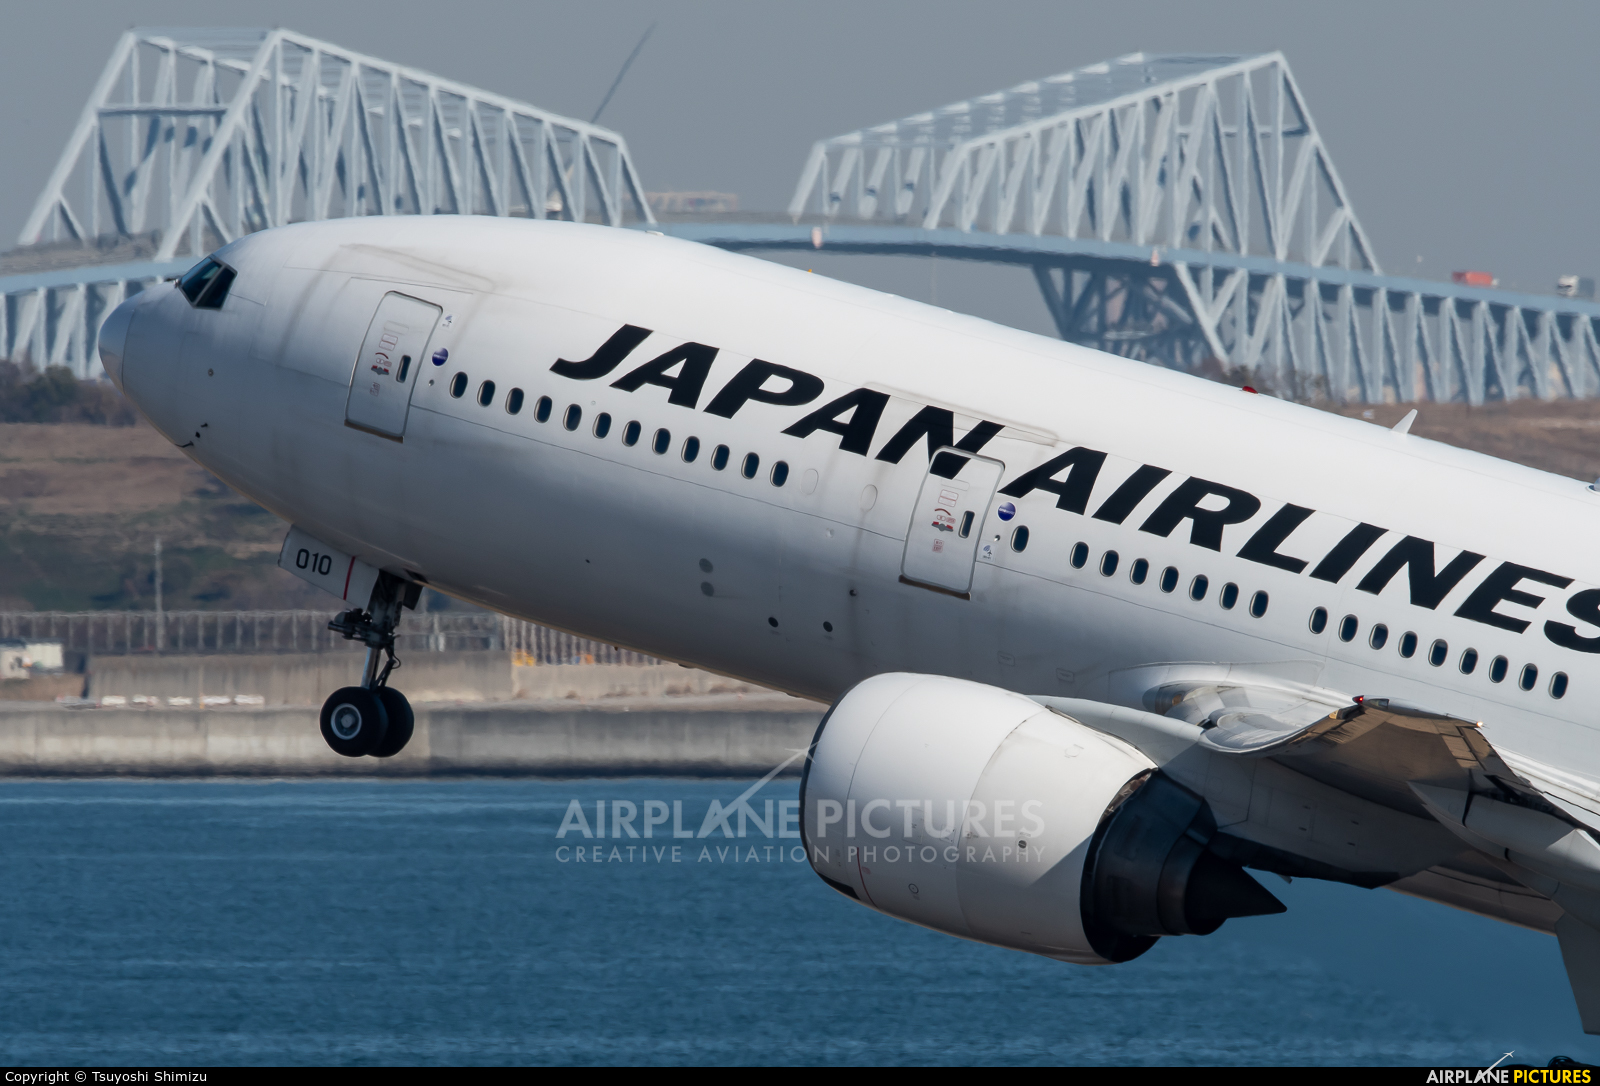 JAL - Japan Airlines JA010D aircraft at Tokyo - Haneda Intl